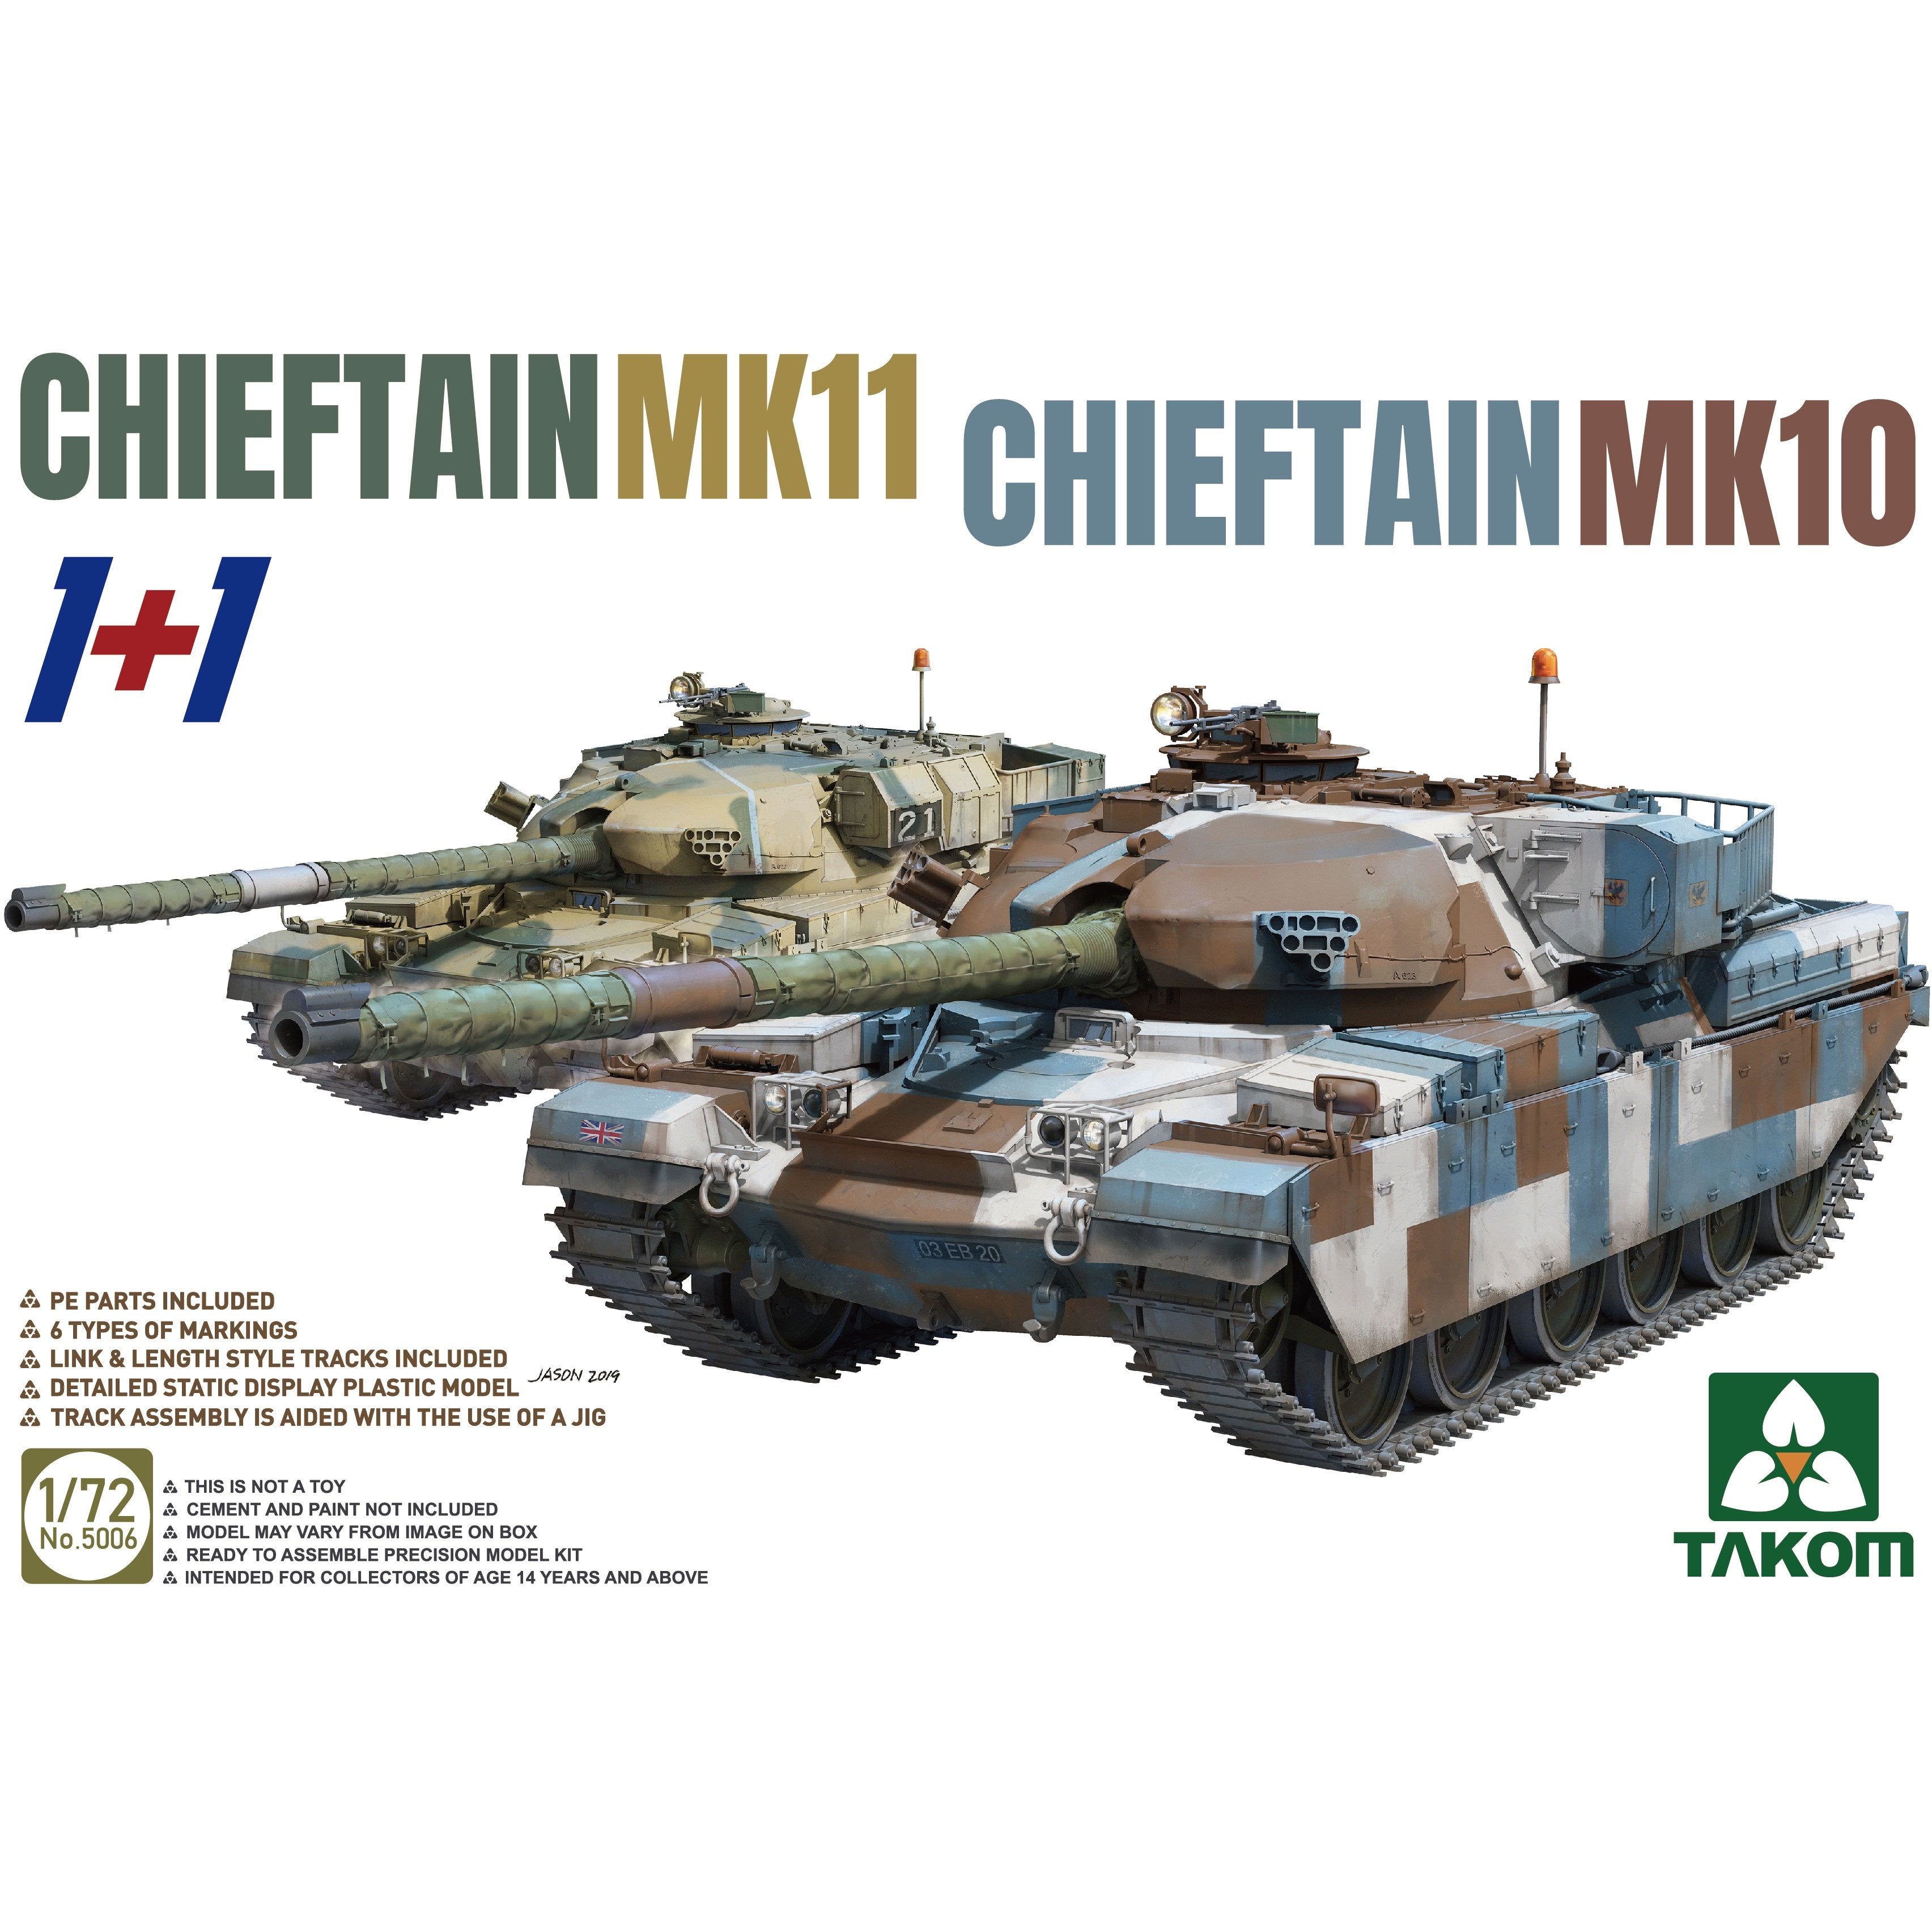 Chieftain Mk11/ Chieftain Mk 10 1/72 by Takom